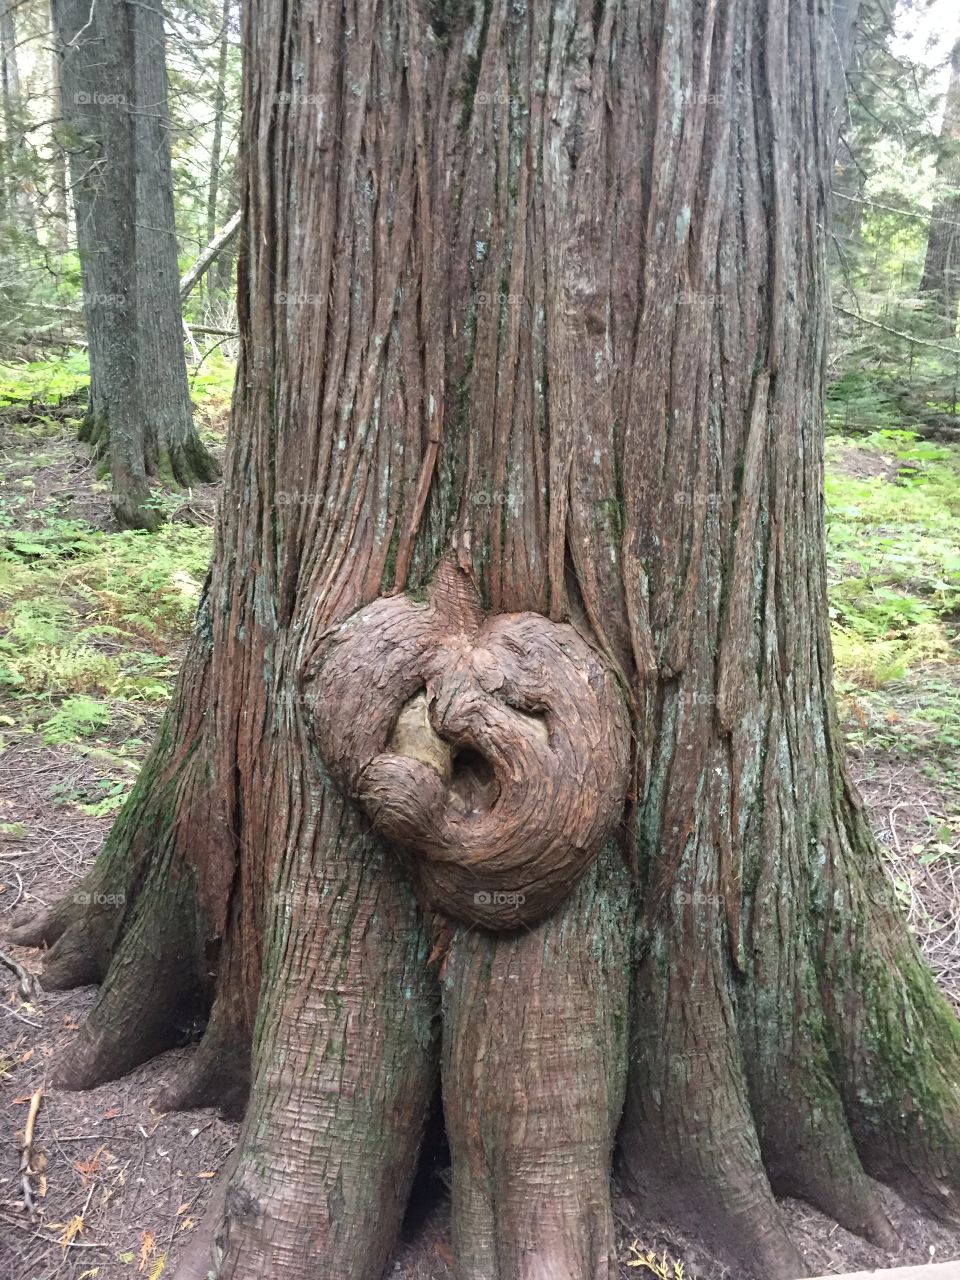 Heart of tree